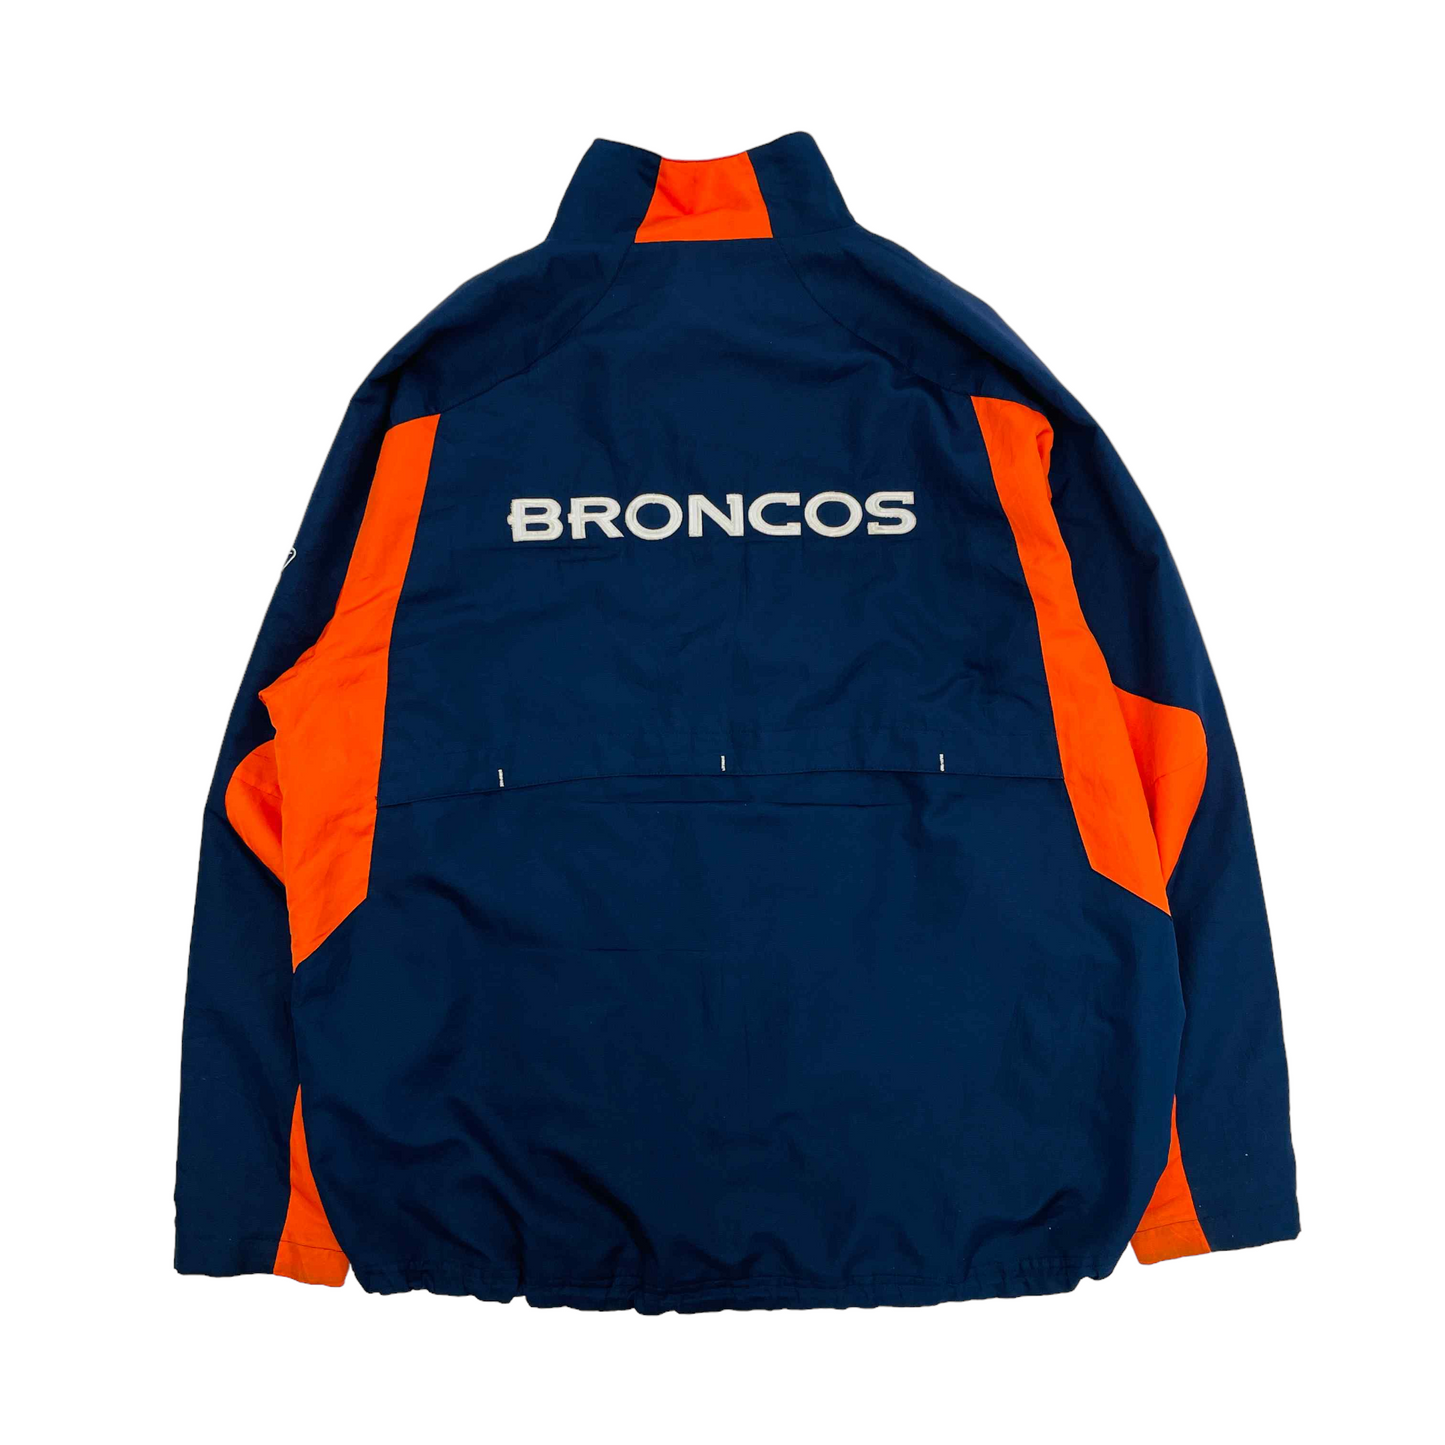 Denver Broncos NFL Jacket - XL – The Vintage Store